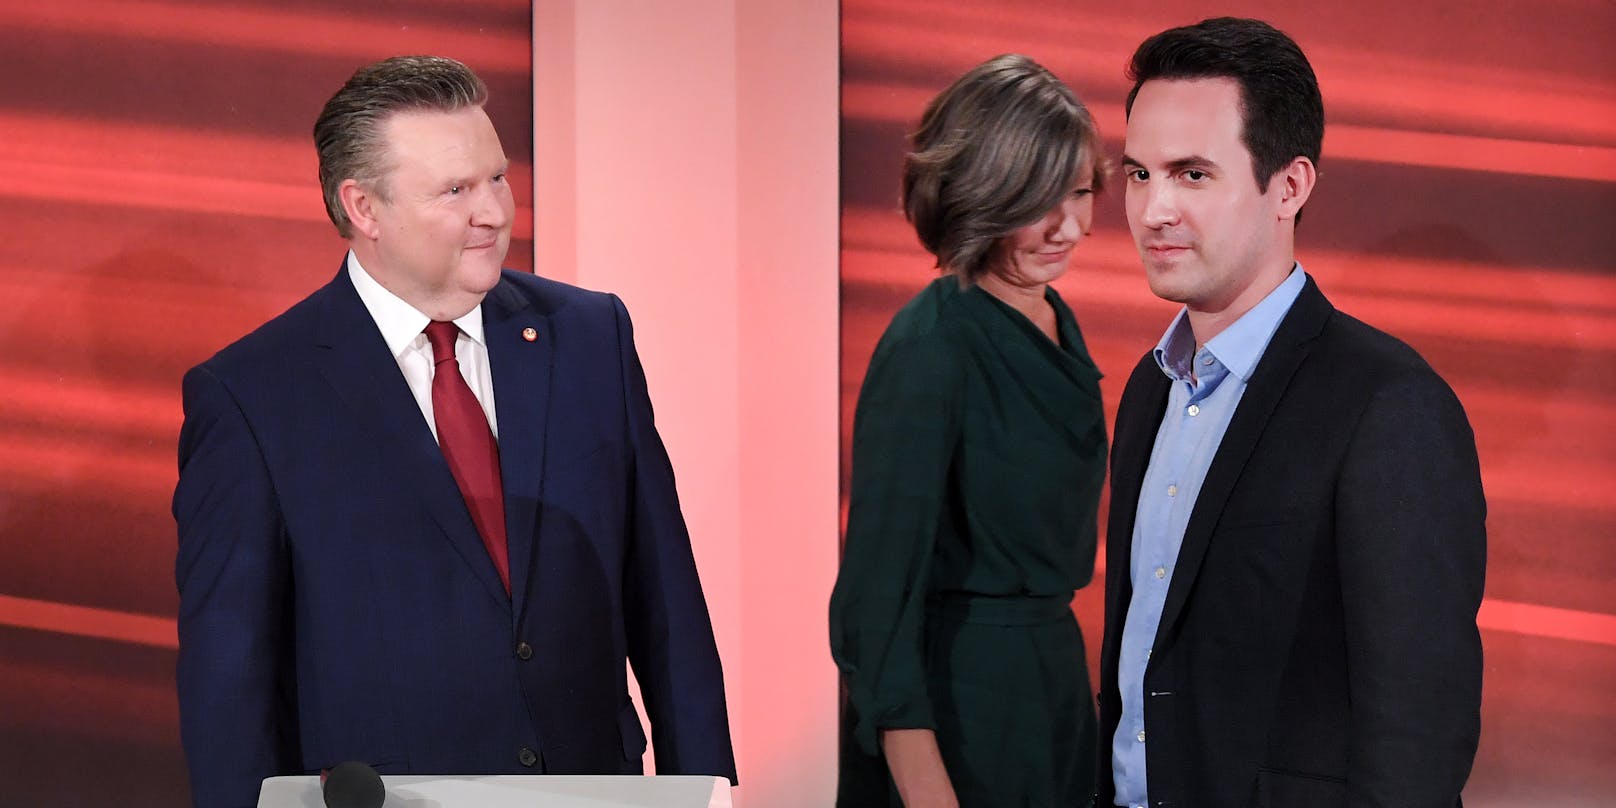 SPÖ-Bürgermeister Ludwig und Neos-Kandidat Wiederkehr